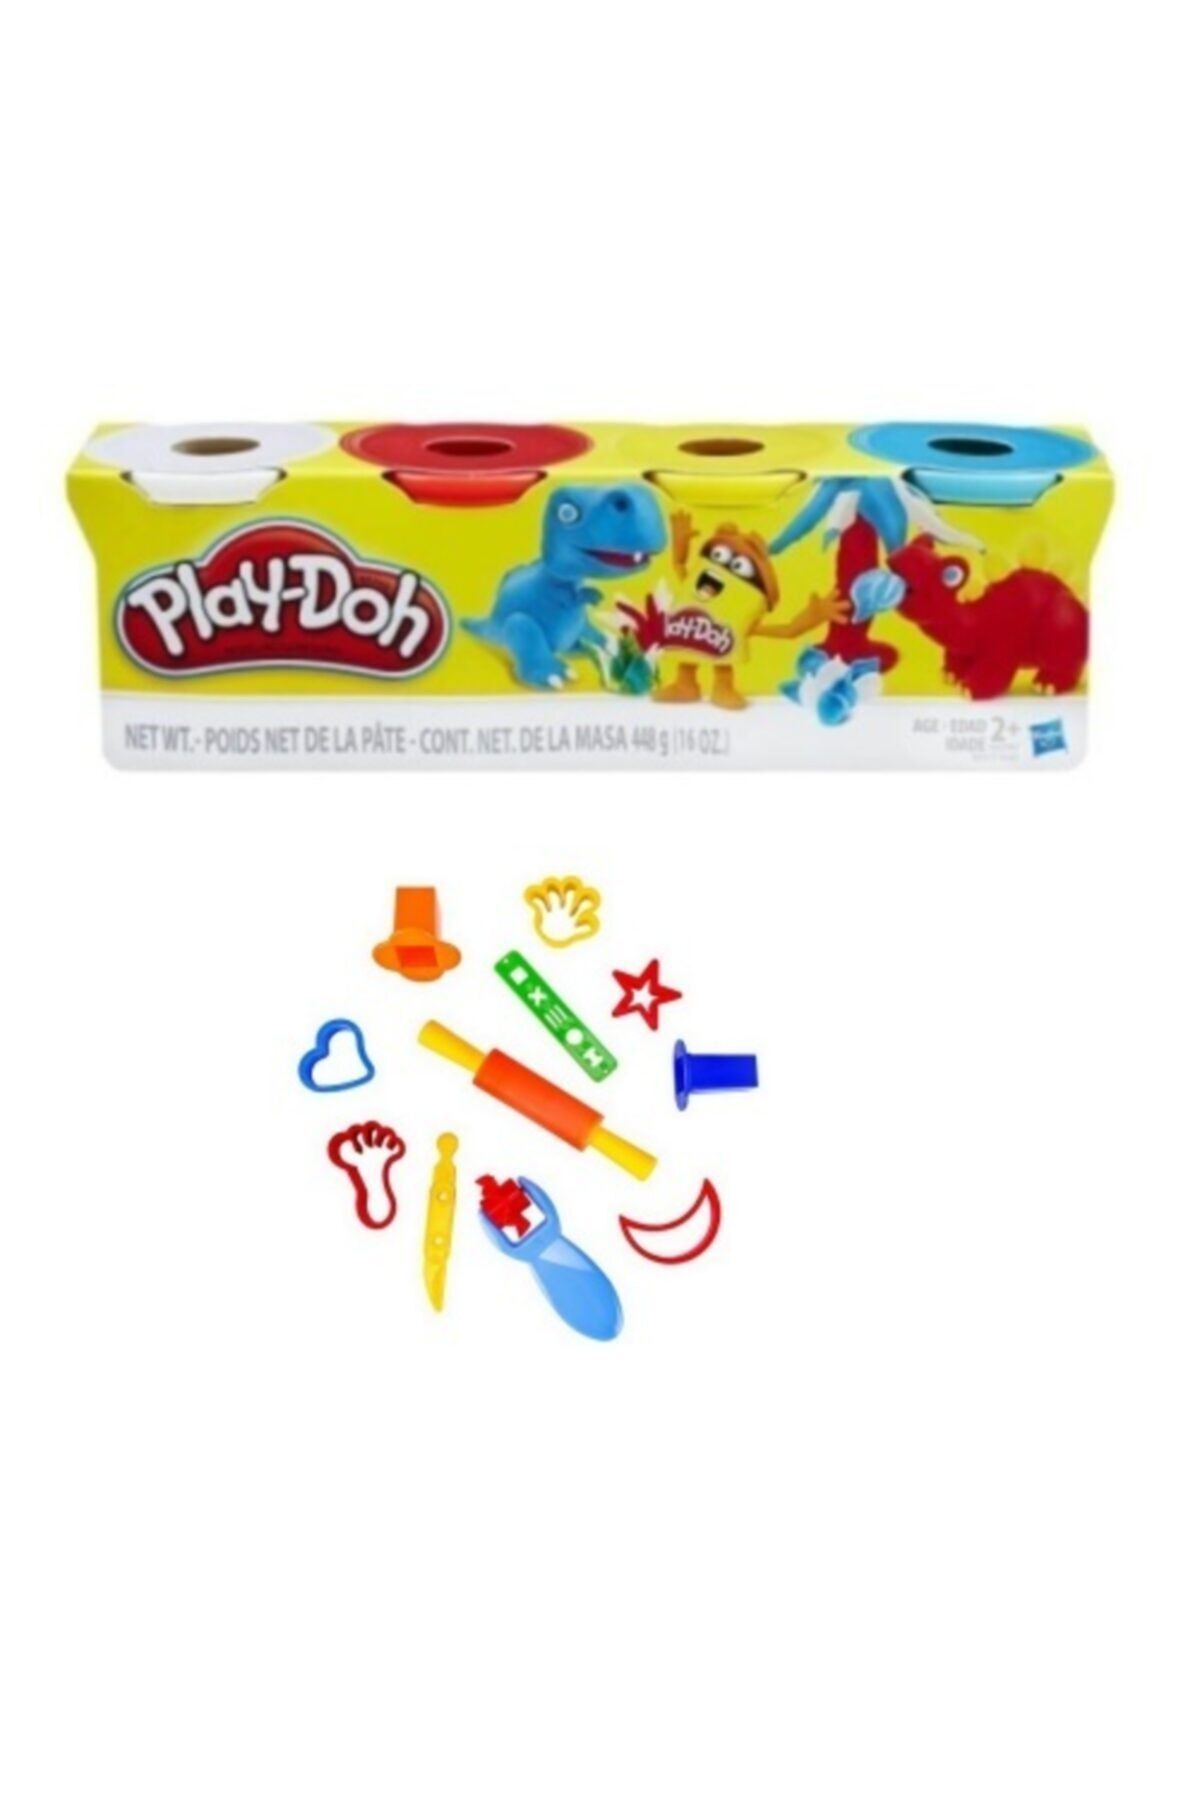 Play Doh Play-doh Oyun Hamur Ve Küçük Şekiller Hamur Kalıbı Seti